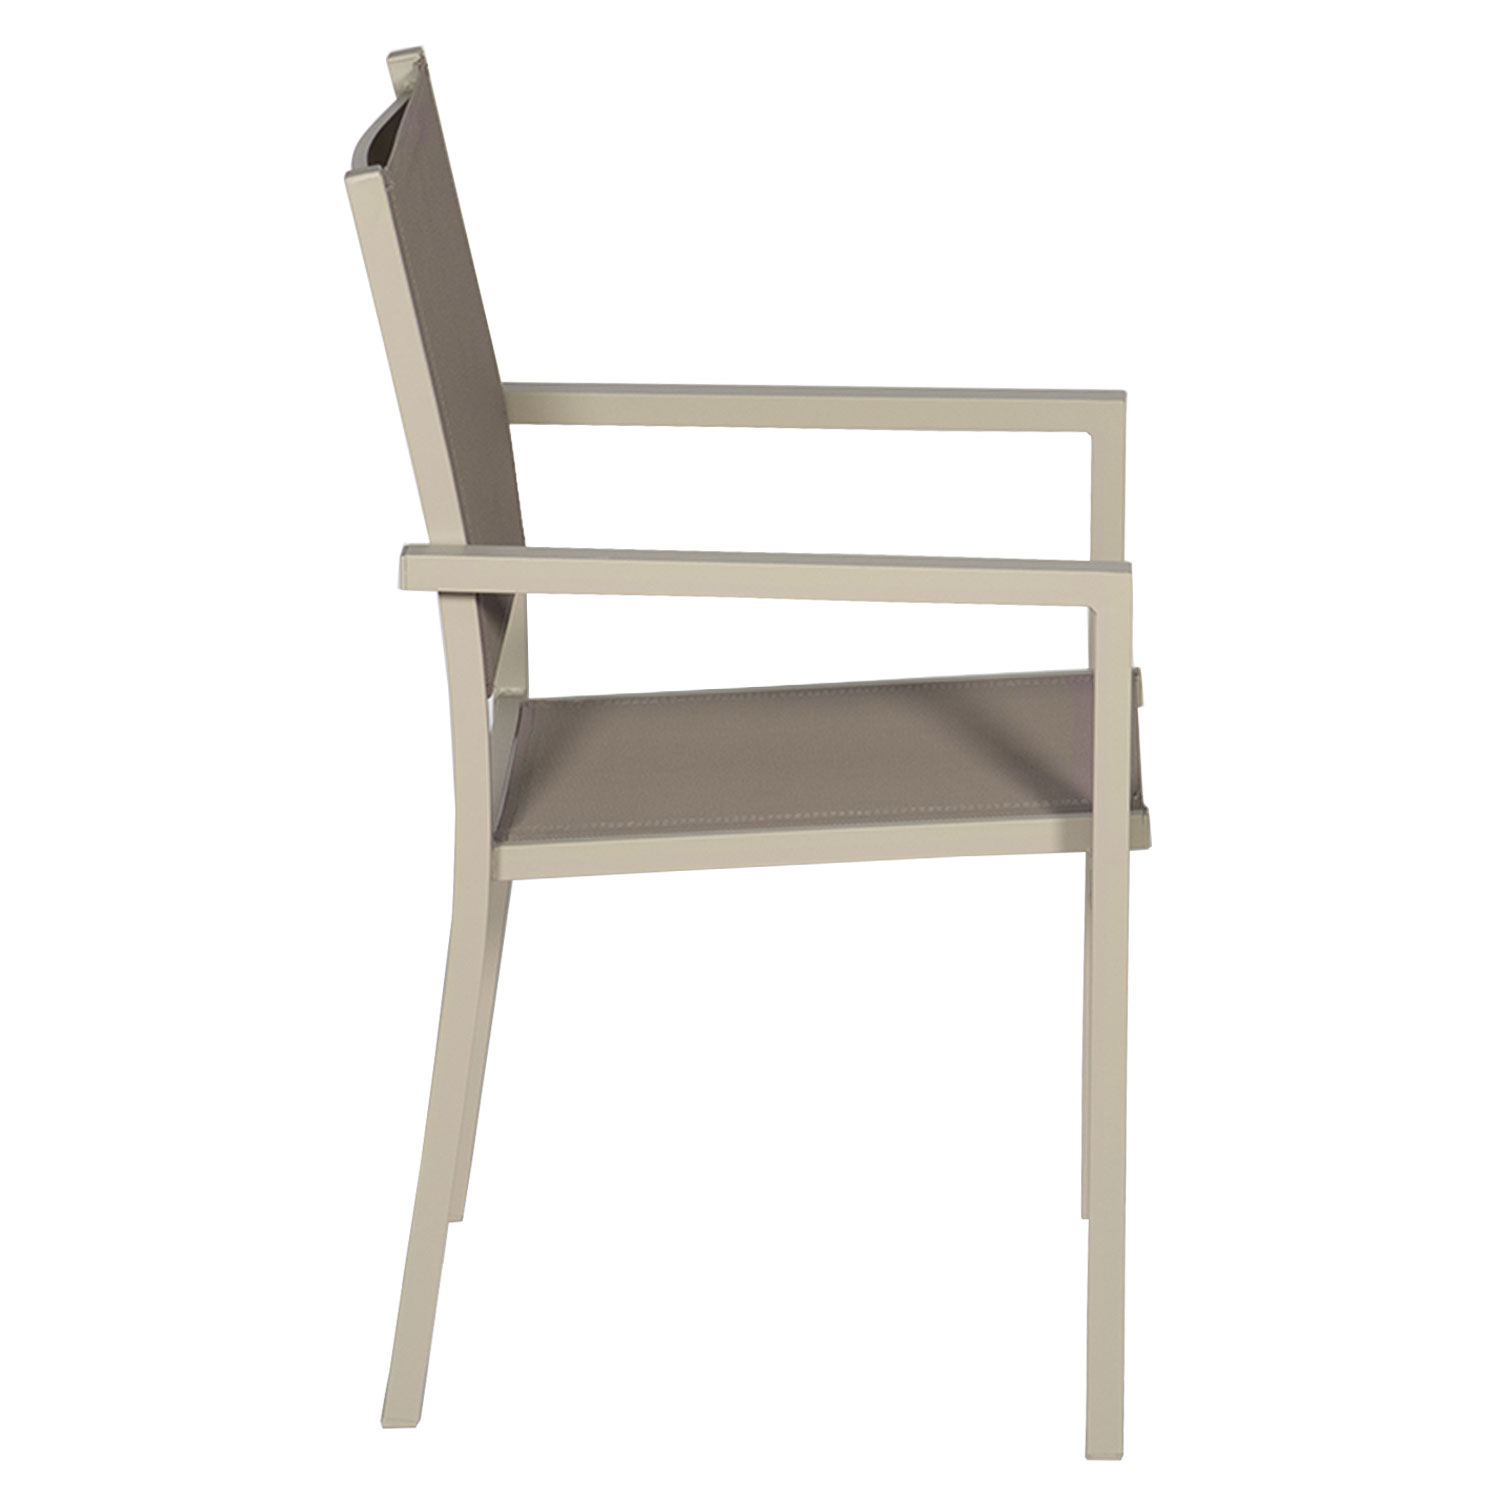 Juego de 4 sillas de aluminio color topo - textileno topo